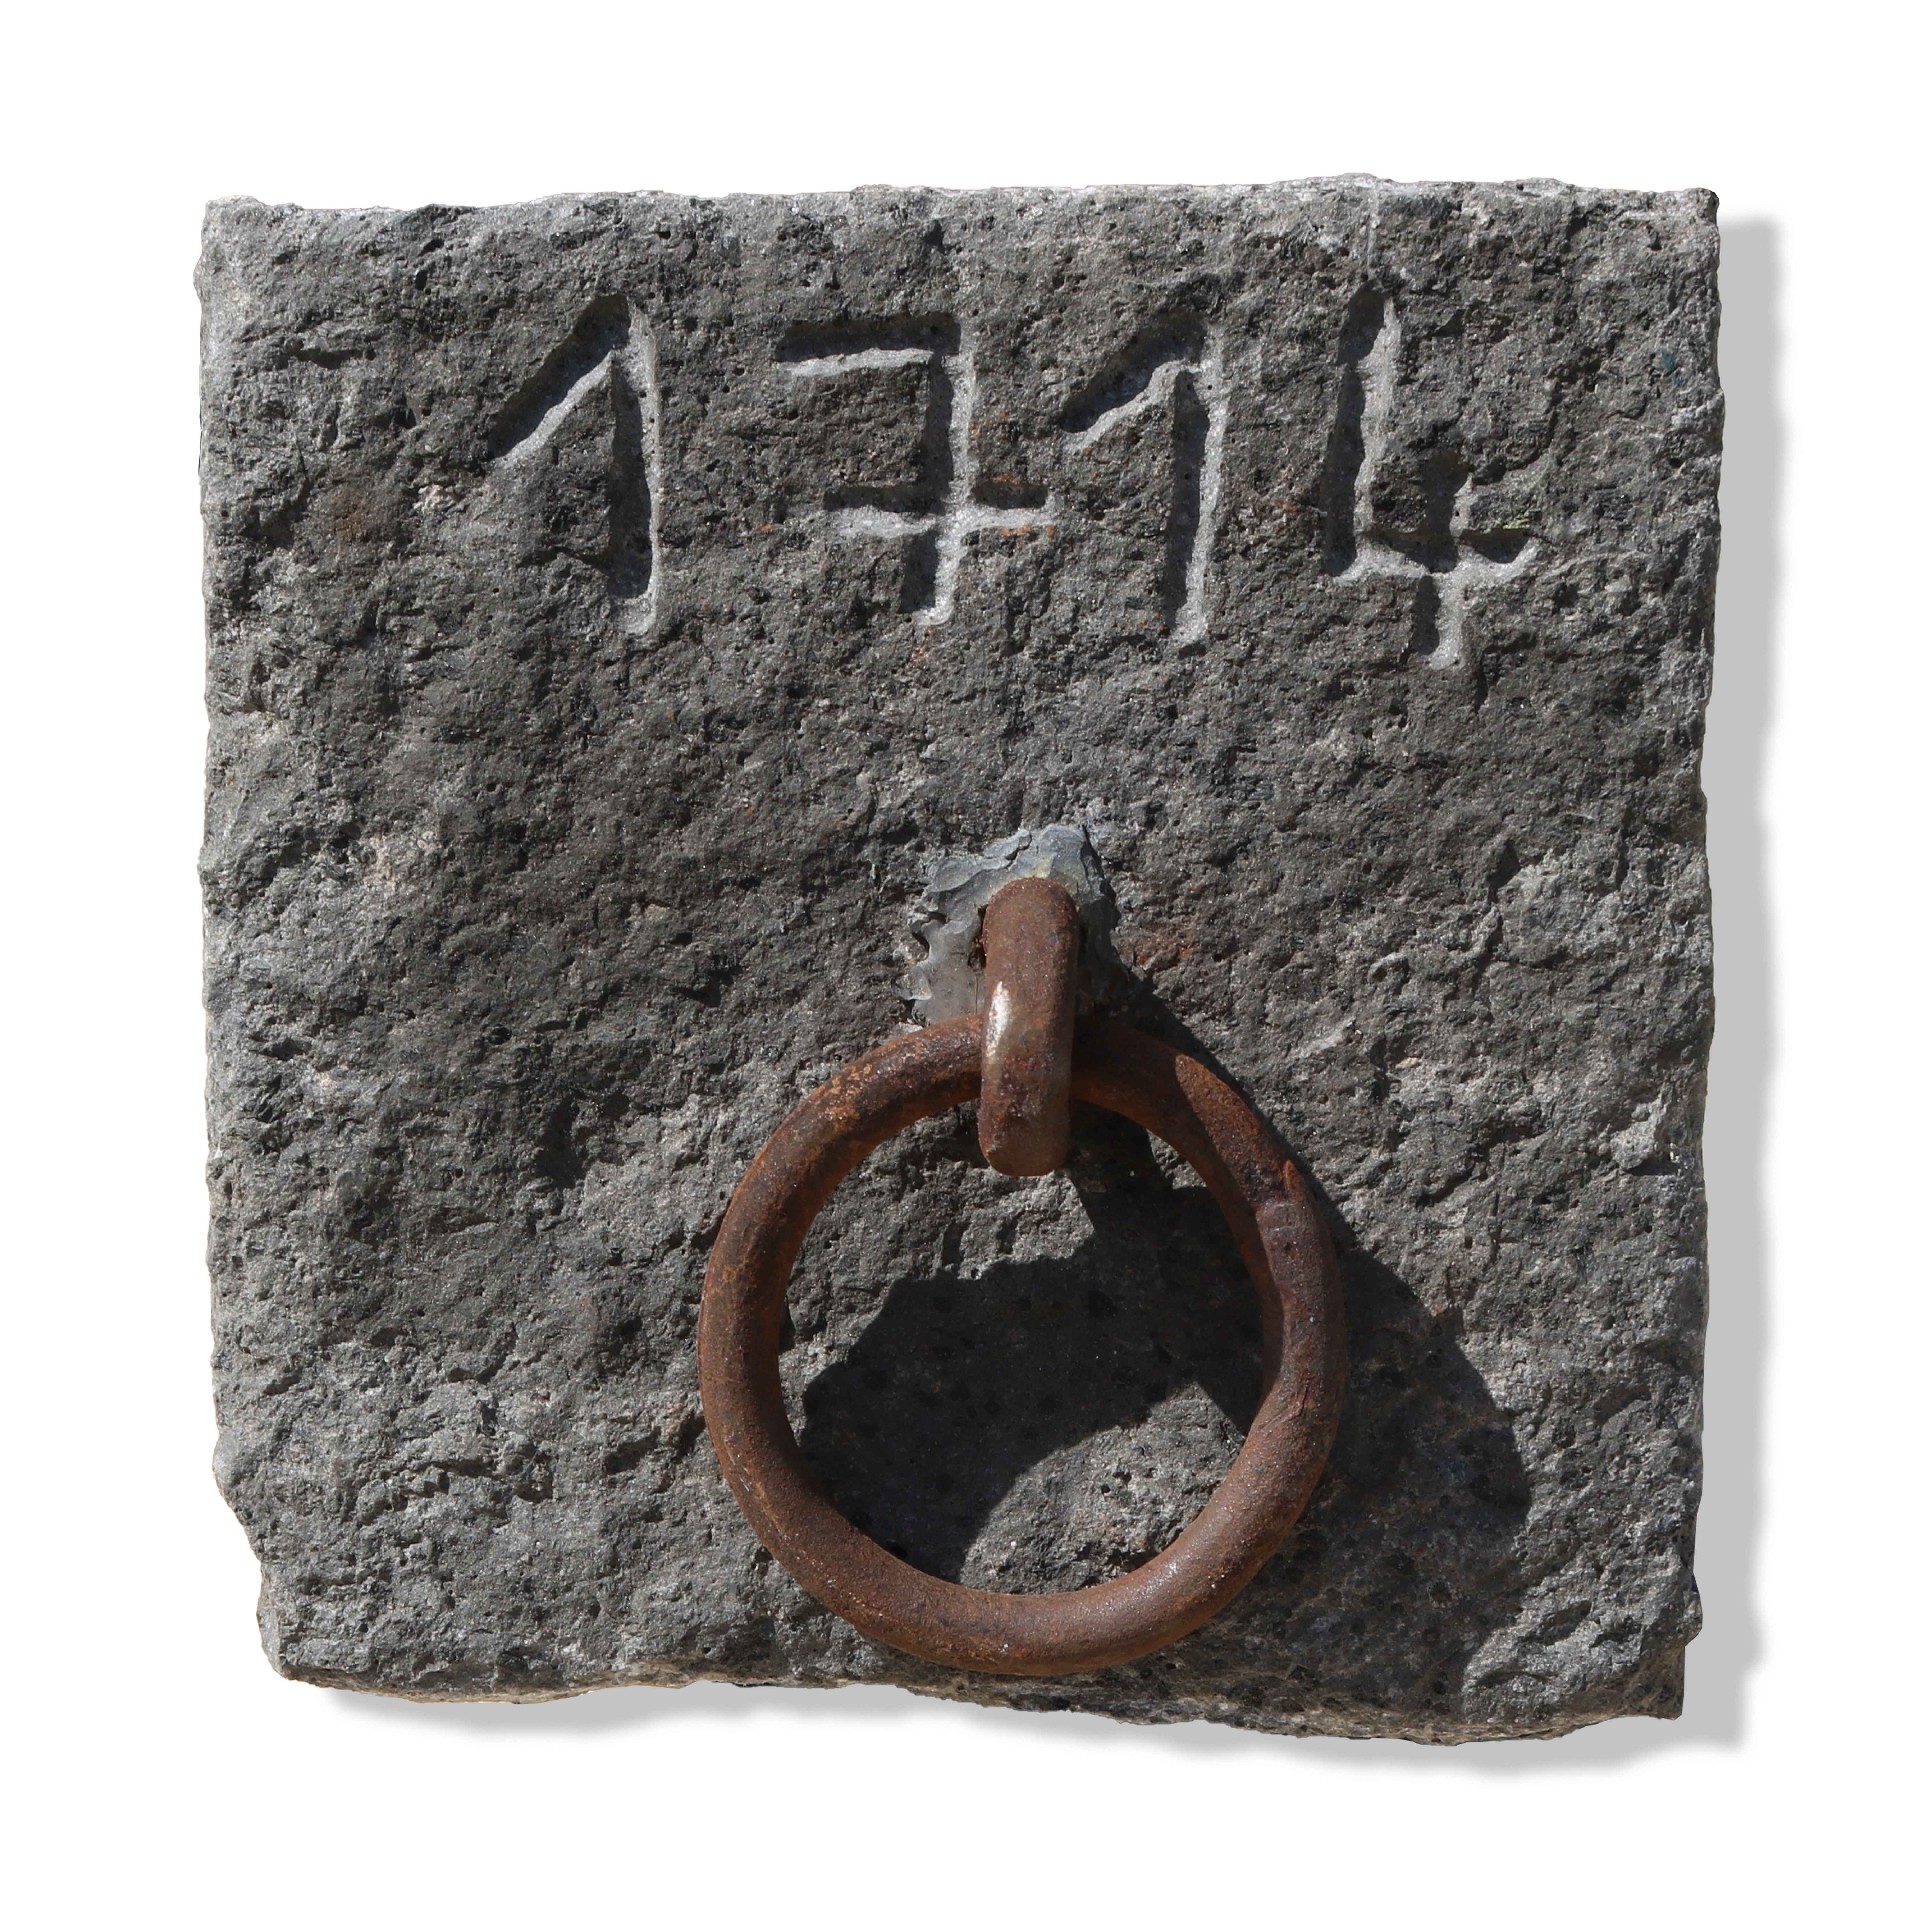 Ferma cavallo antico in pietra datato 1714. - 1